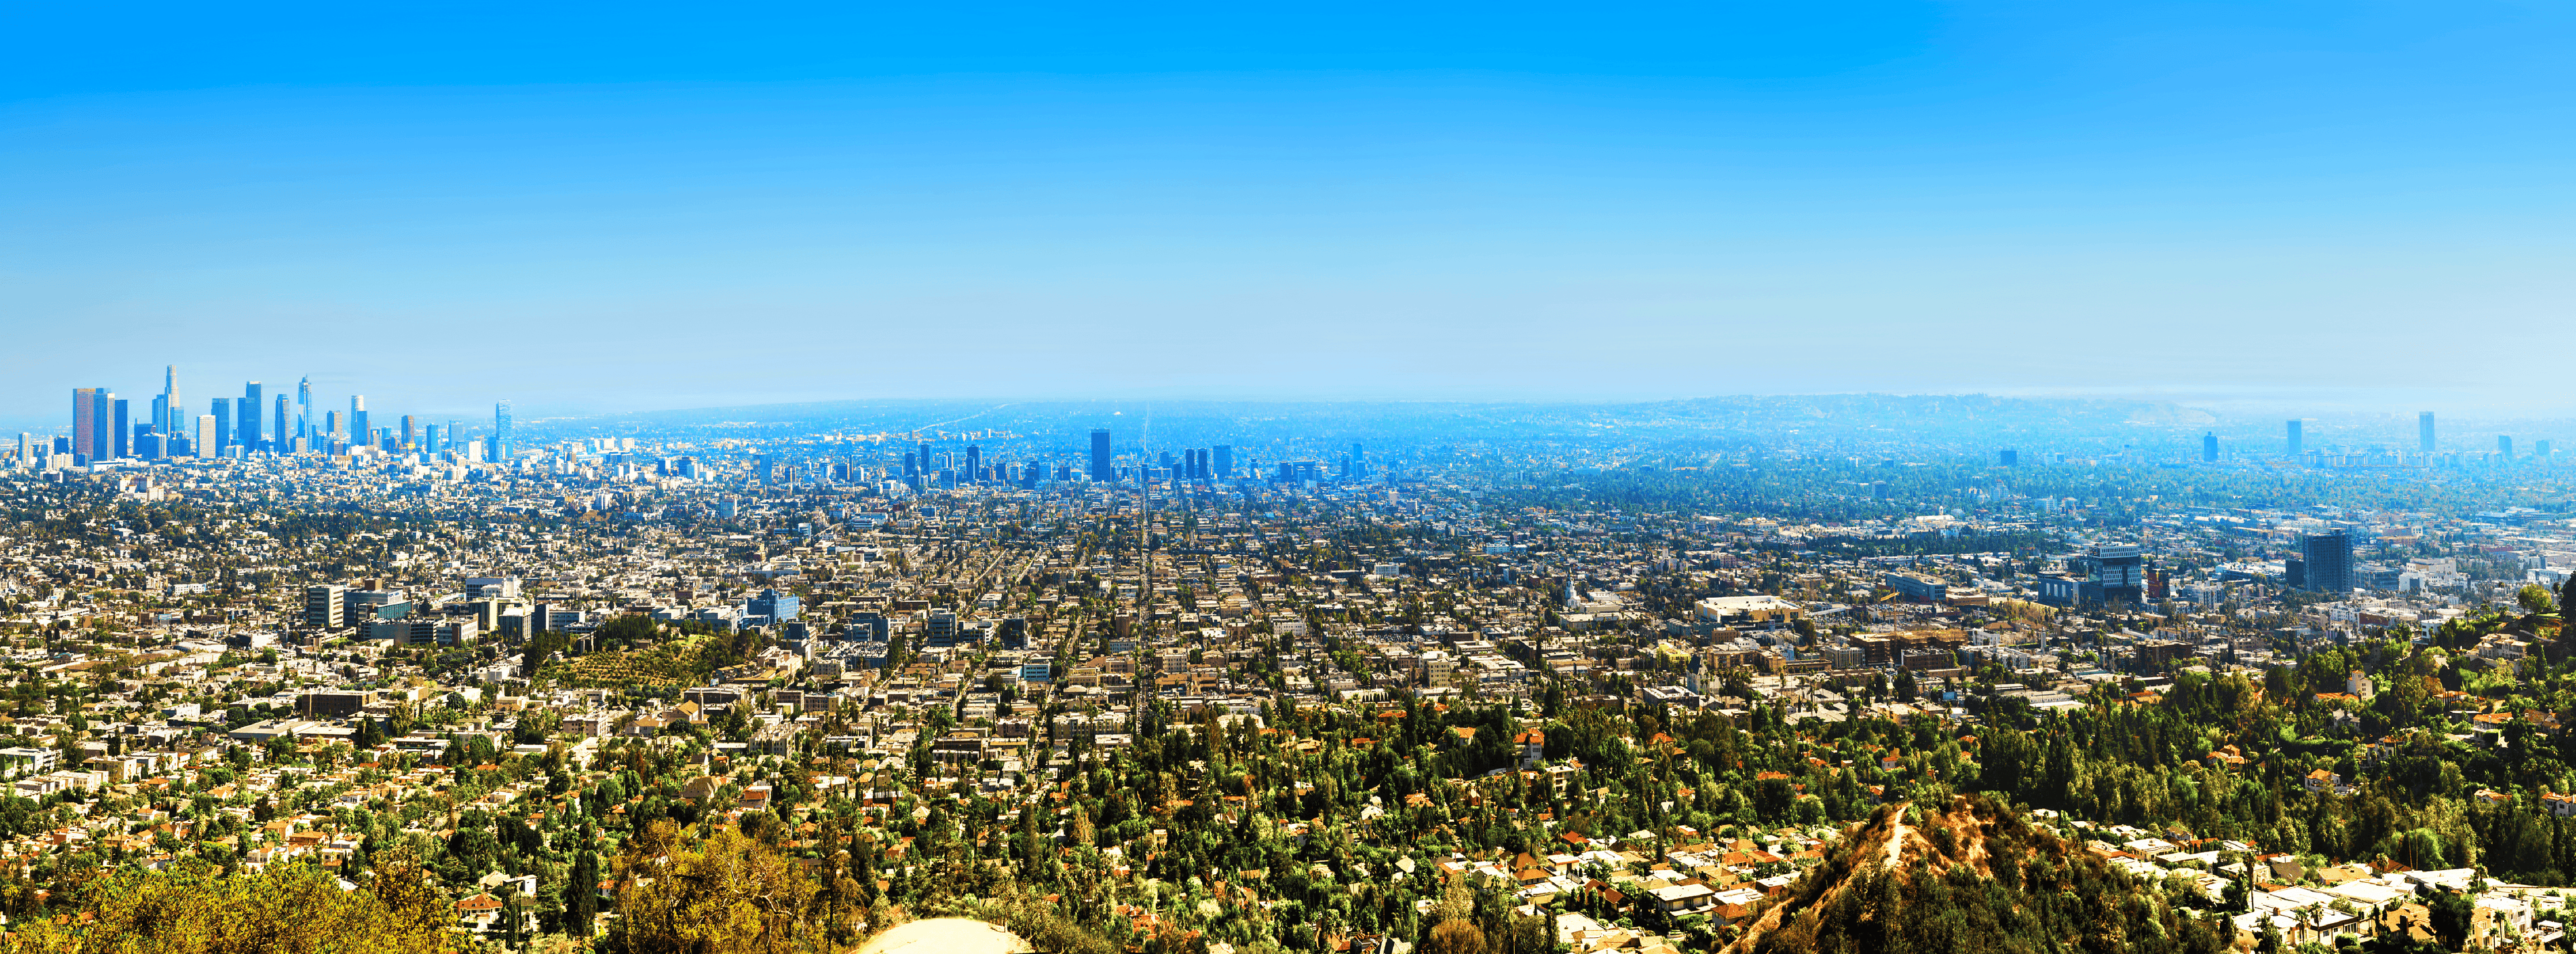 Los Angeles, CA